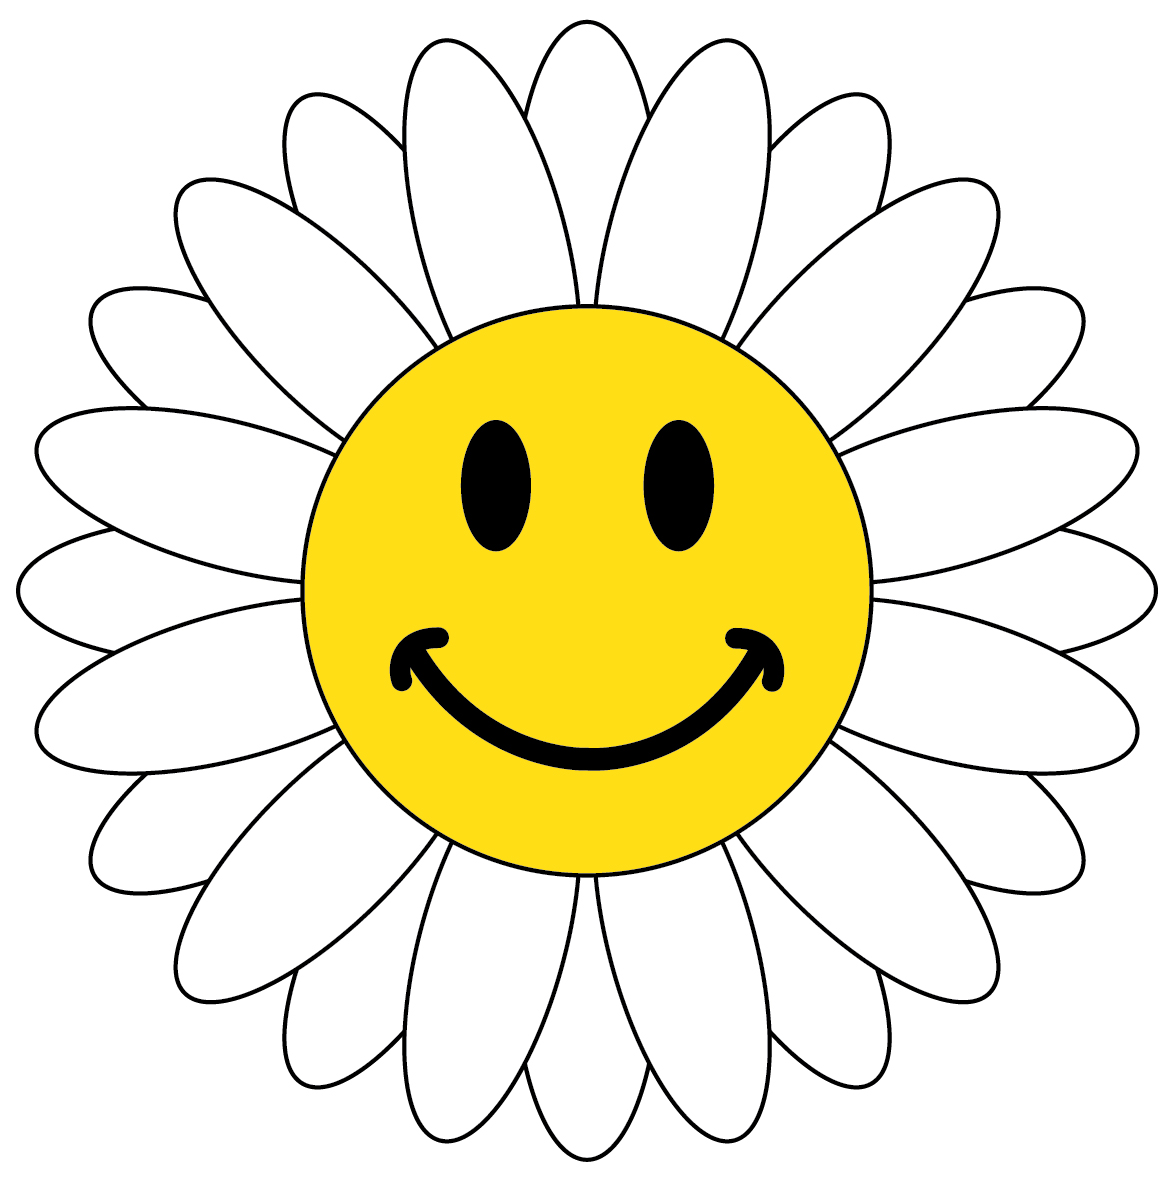 Susan's School Daze: Smiley face symbols